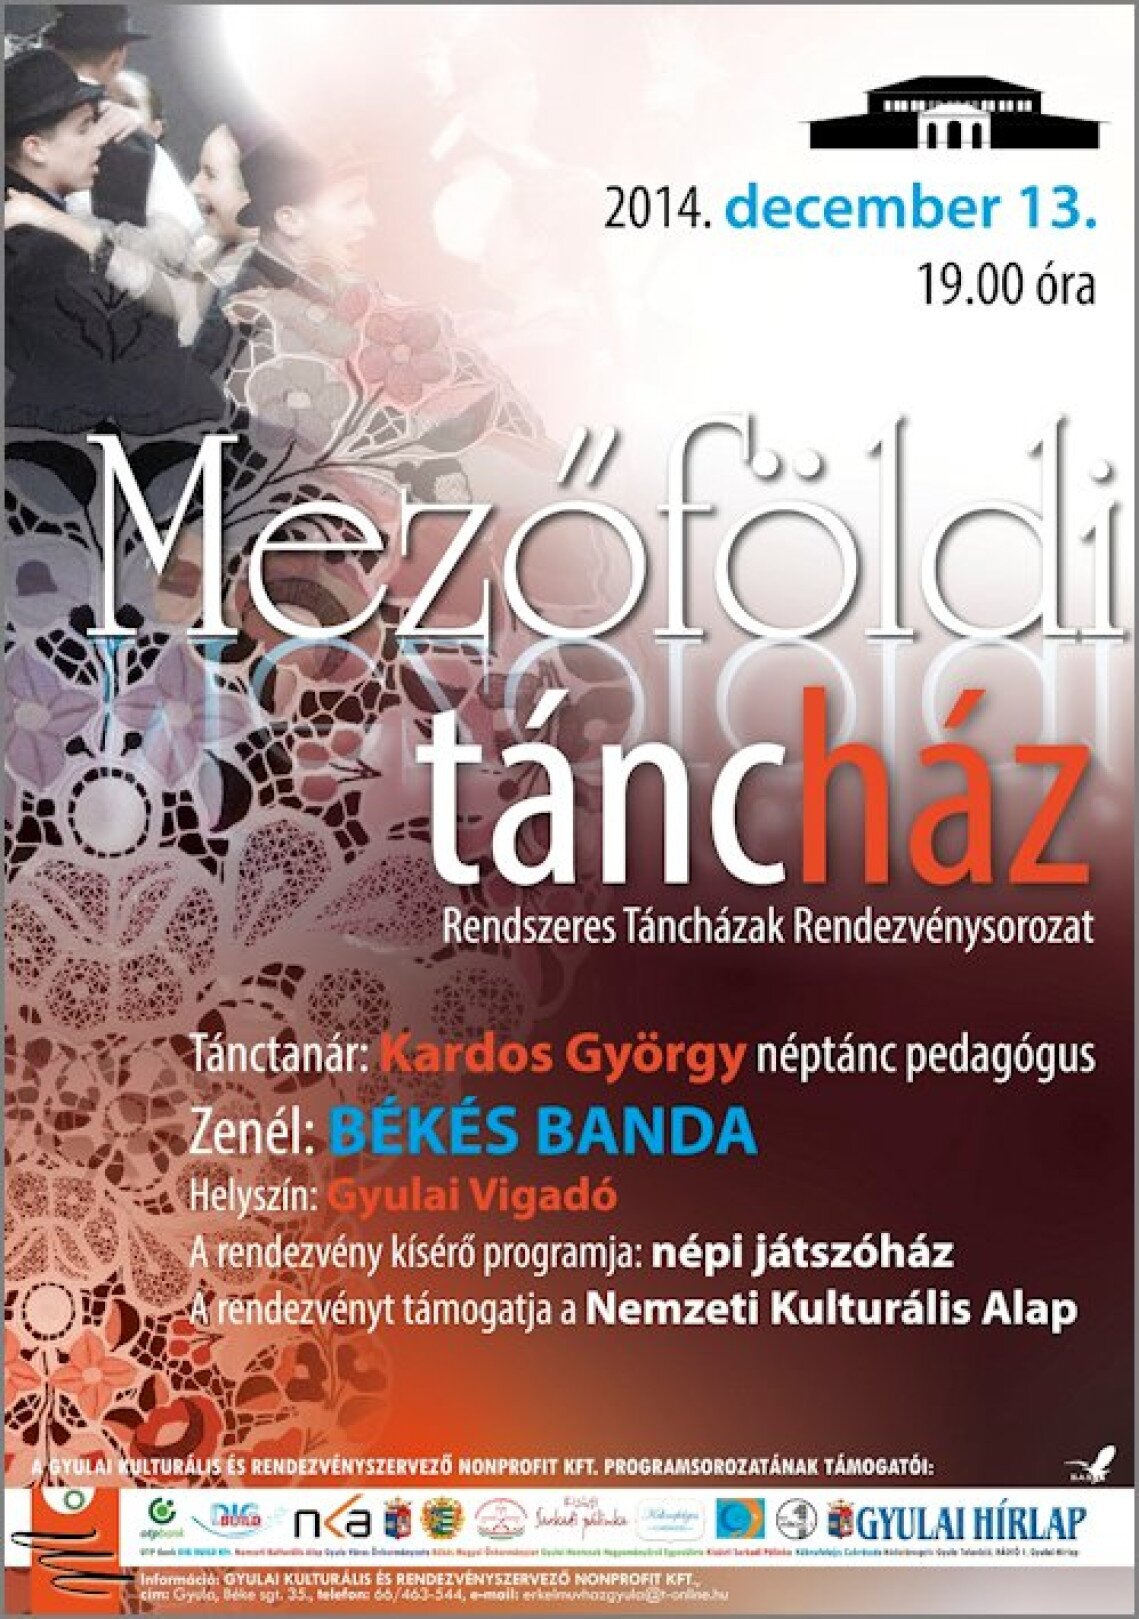 mezofoldi-tanchaz-gyula-plakat.jpg